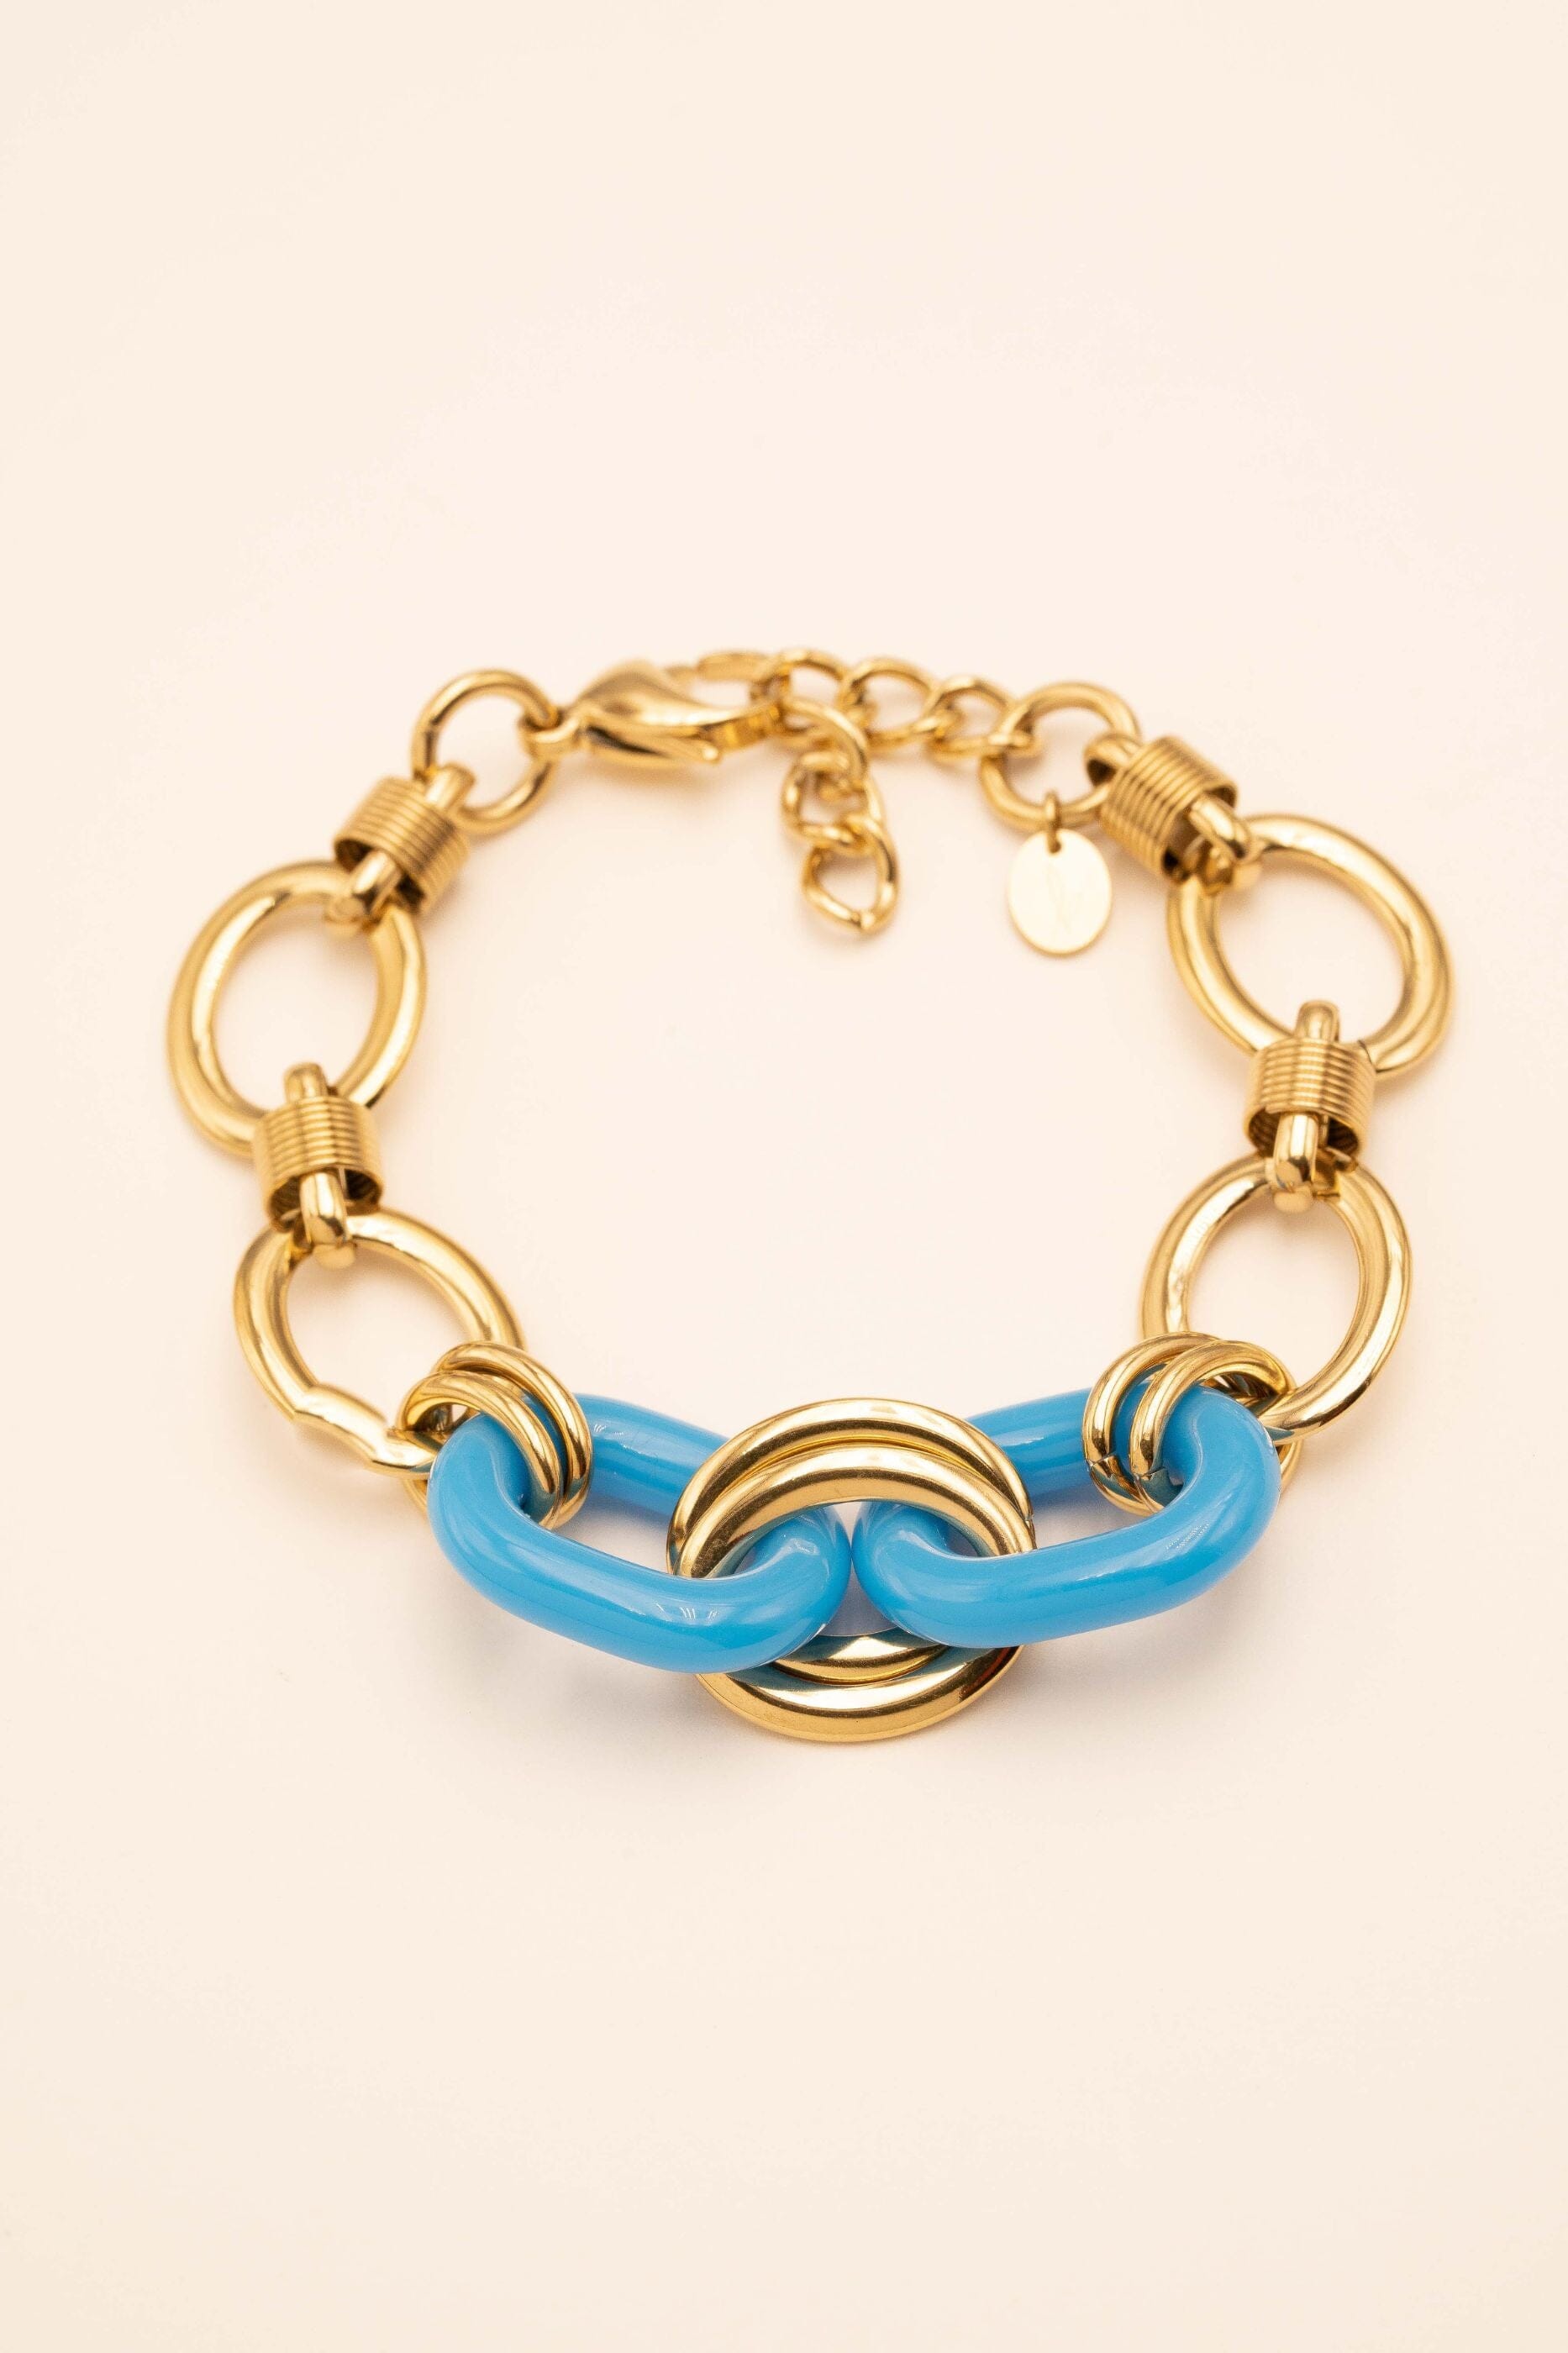 Bracelet Bohm Paris - Matheline bracelet Bohm Paris Turquoise résine 